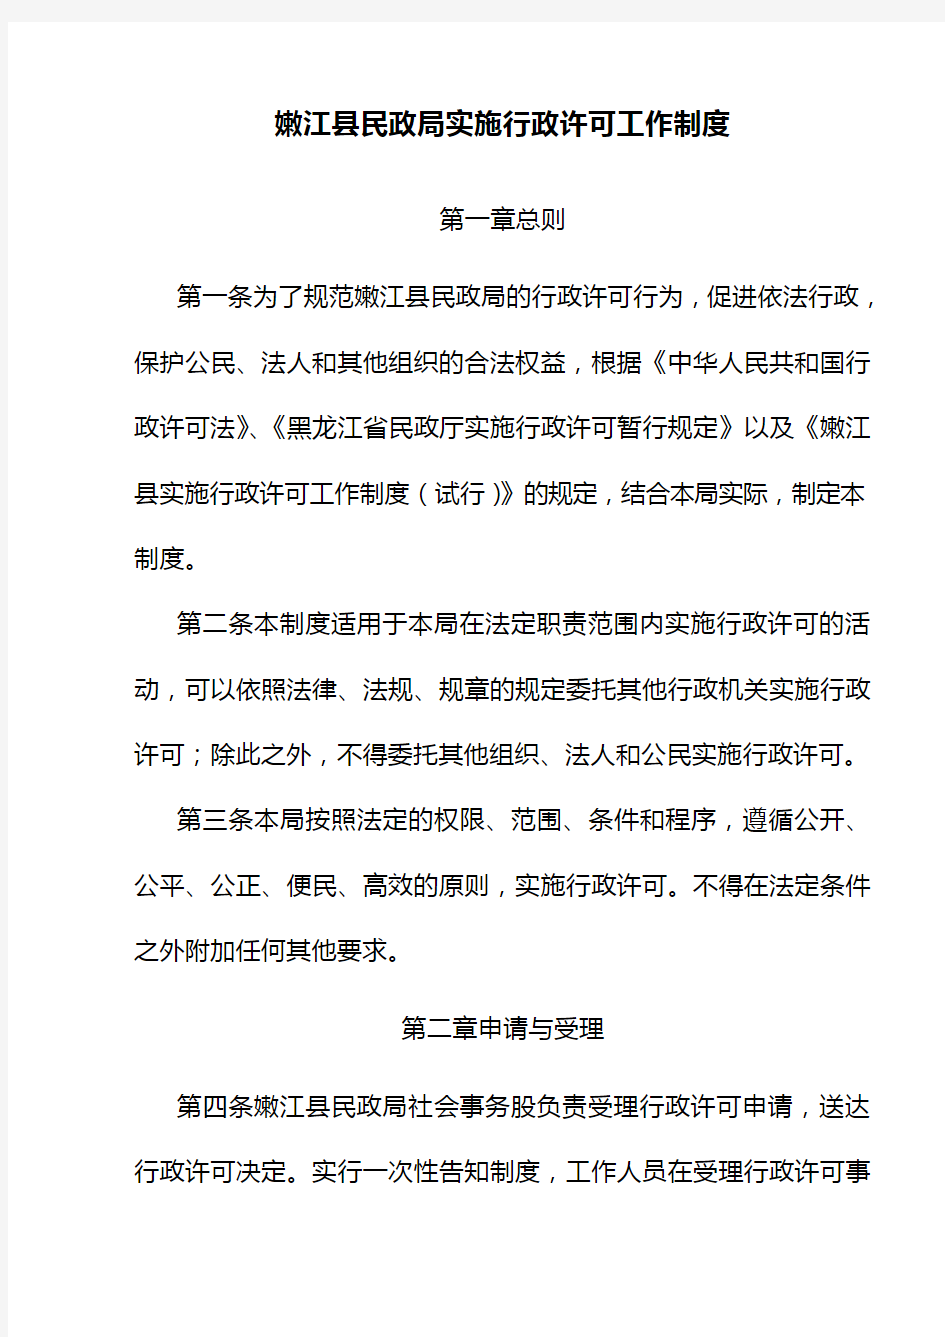 嫩江县民政局实施行政许可工作制度